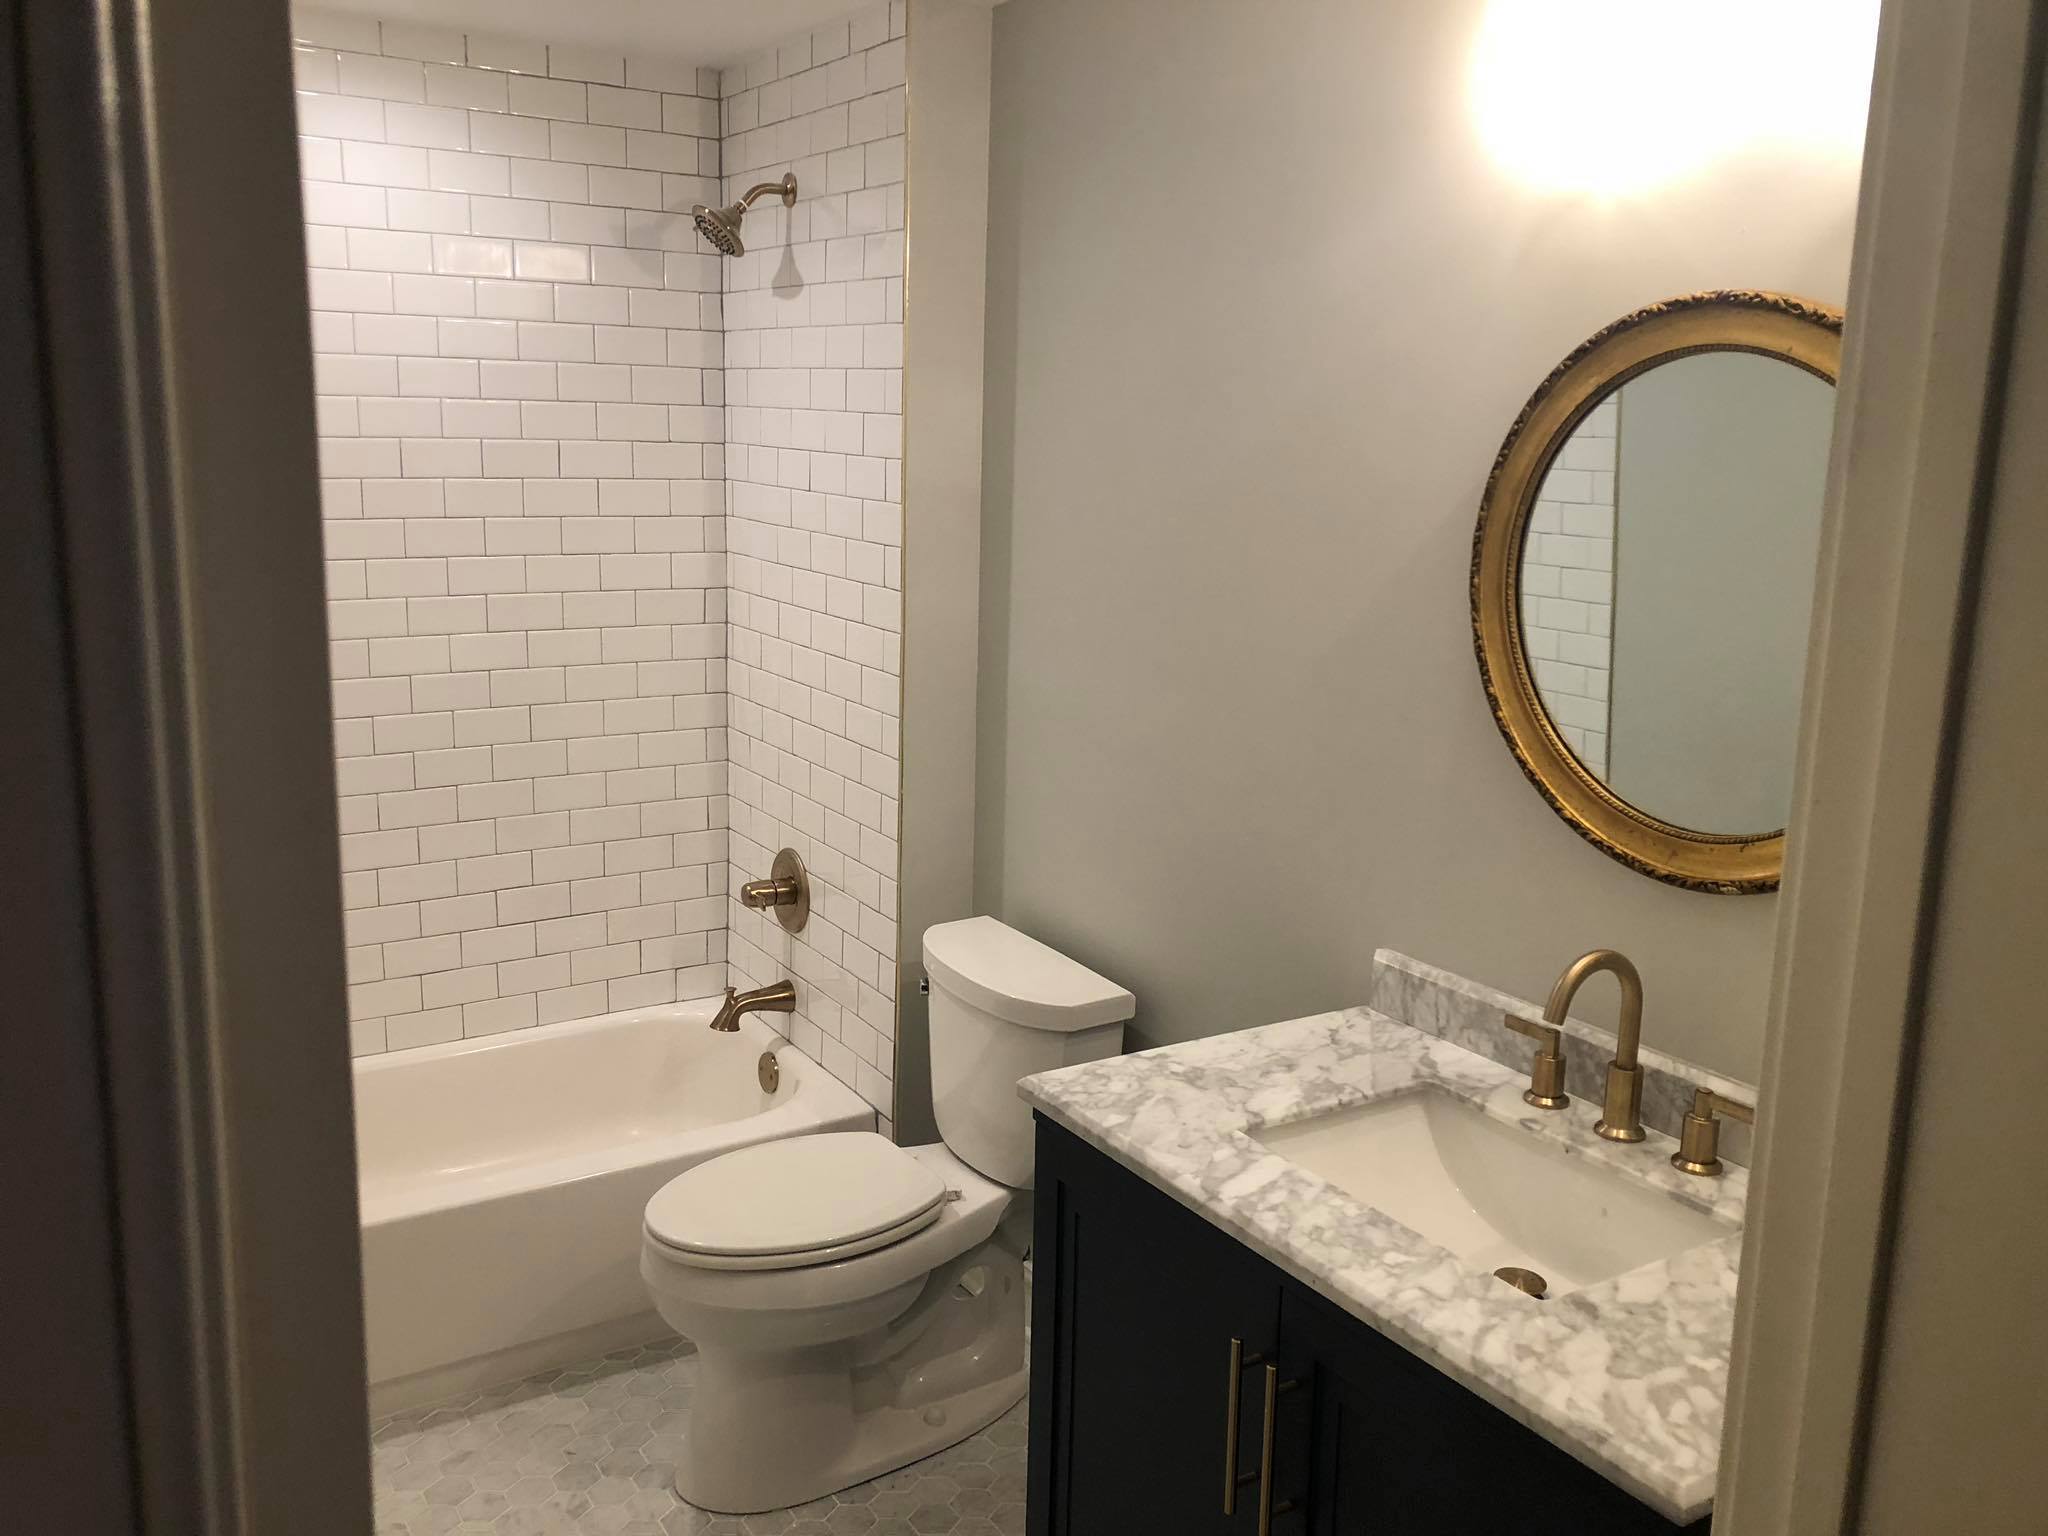 Bathroom Remodel with New Tiles and Double Door Vanity